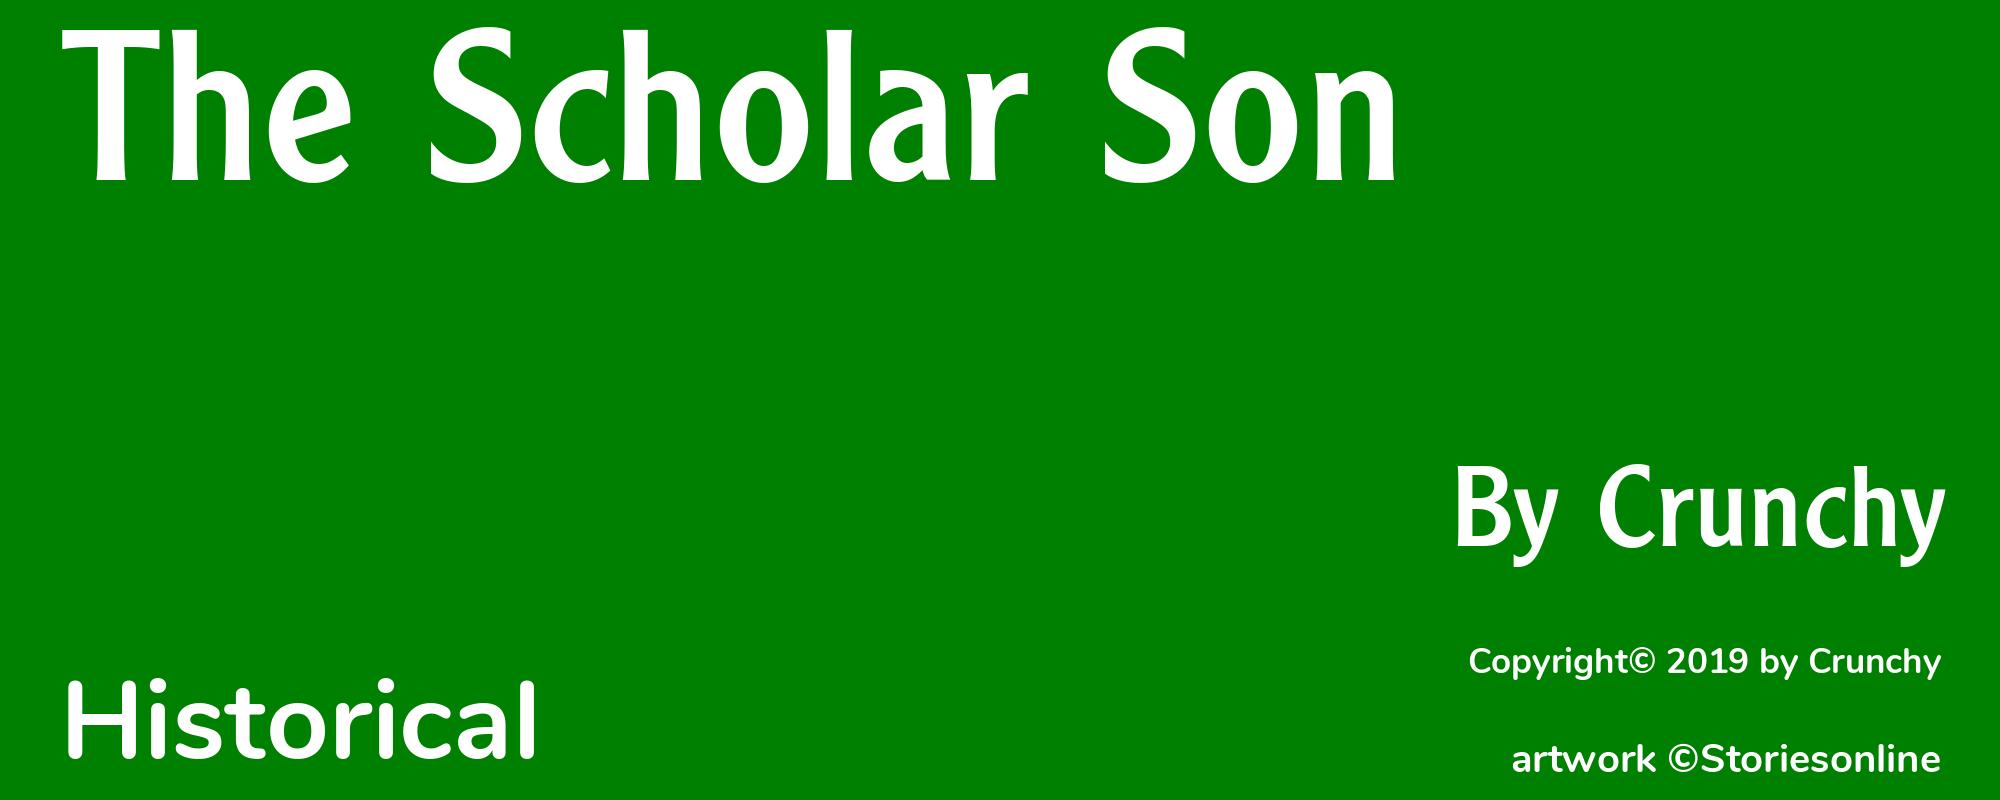 The Scholar Son - Cover